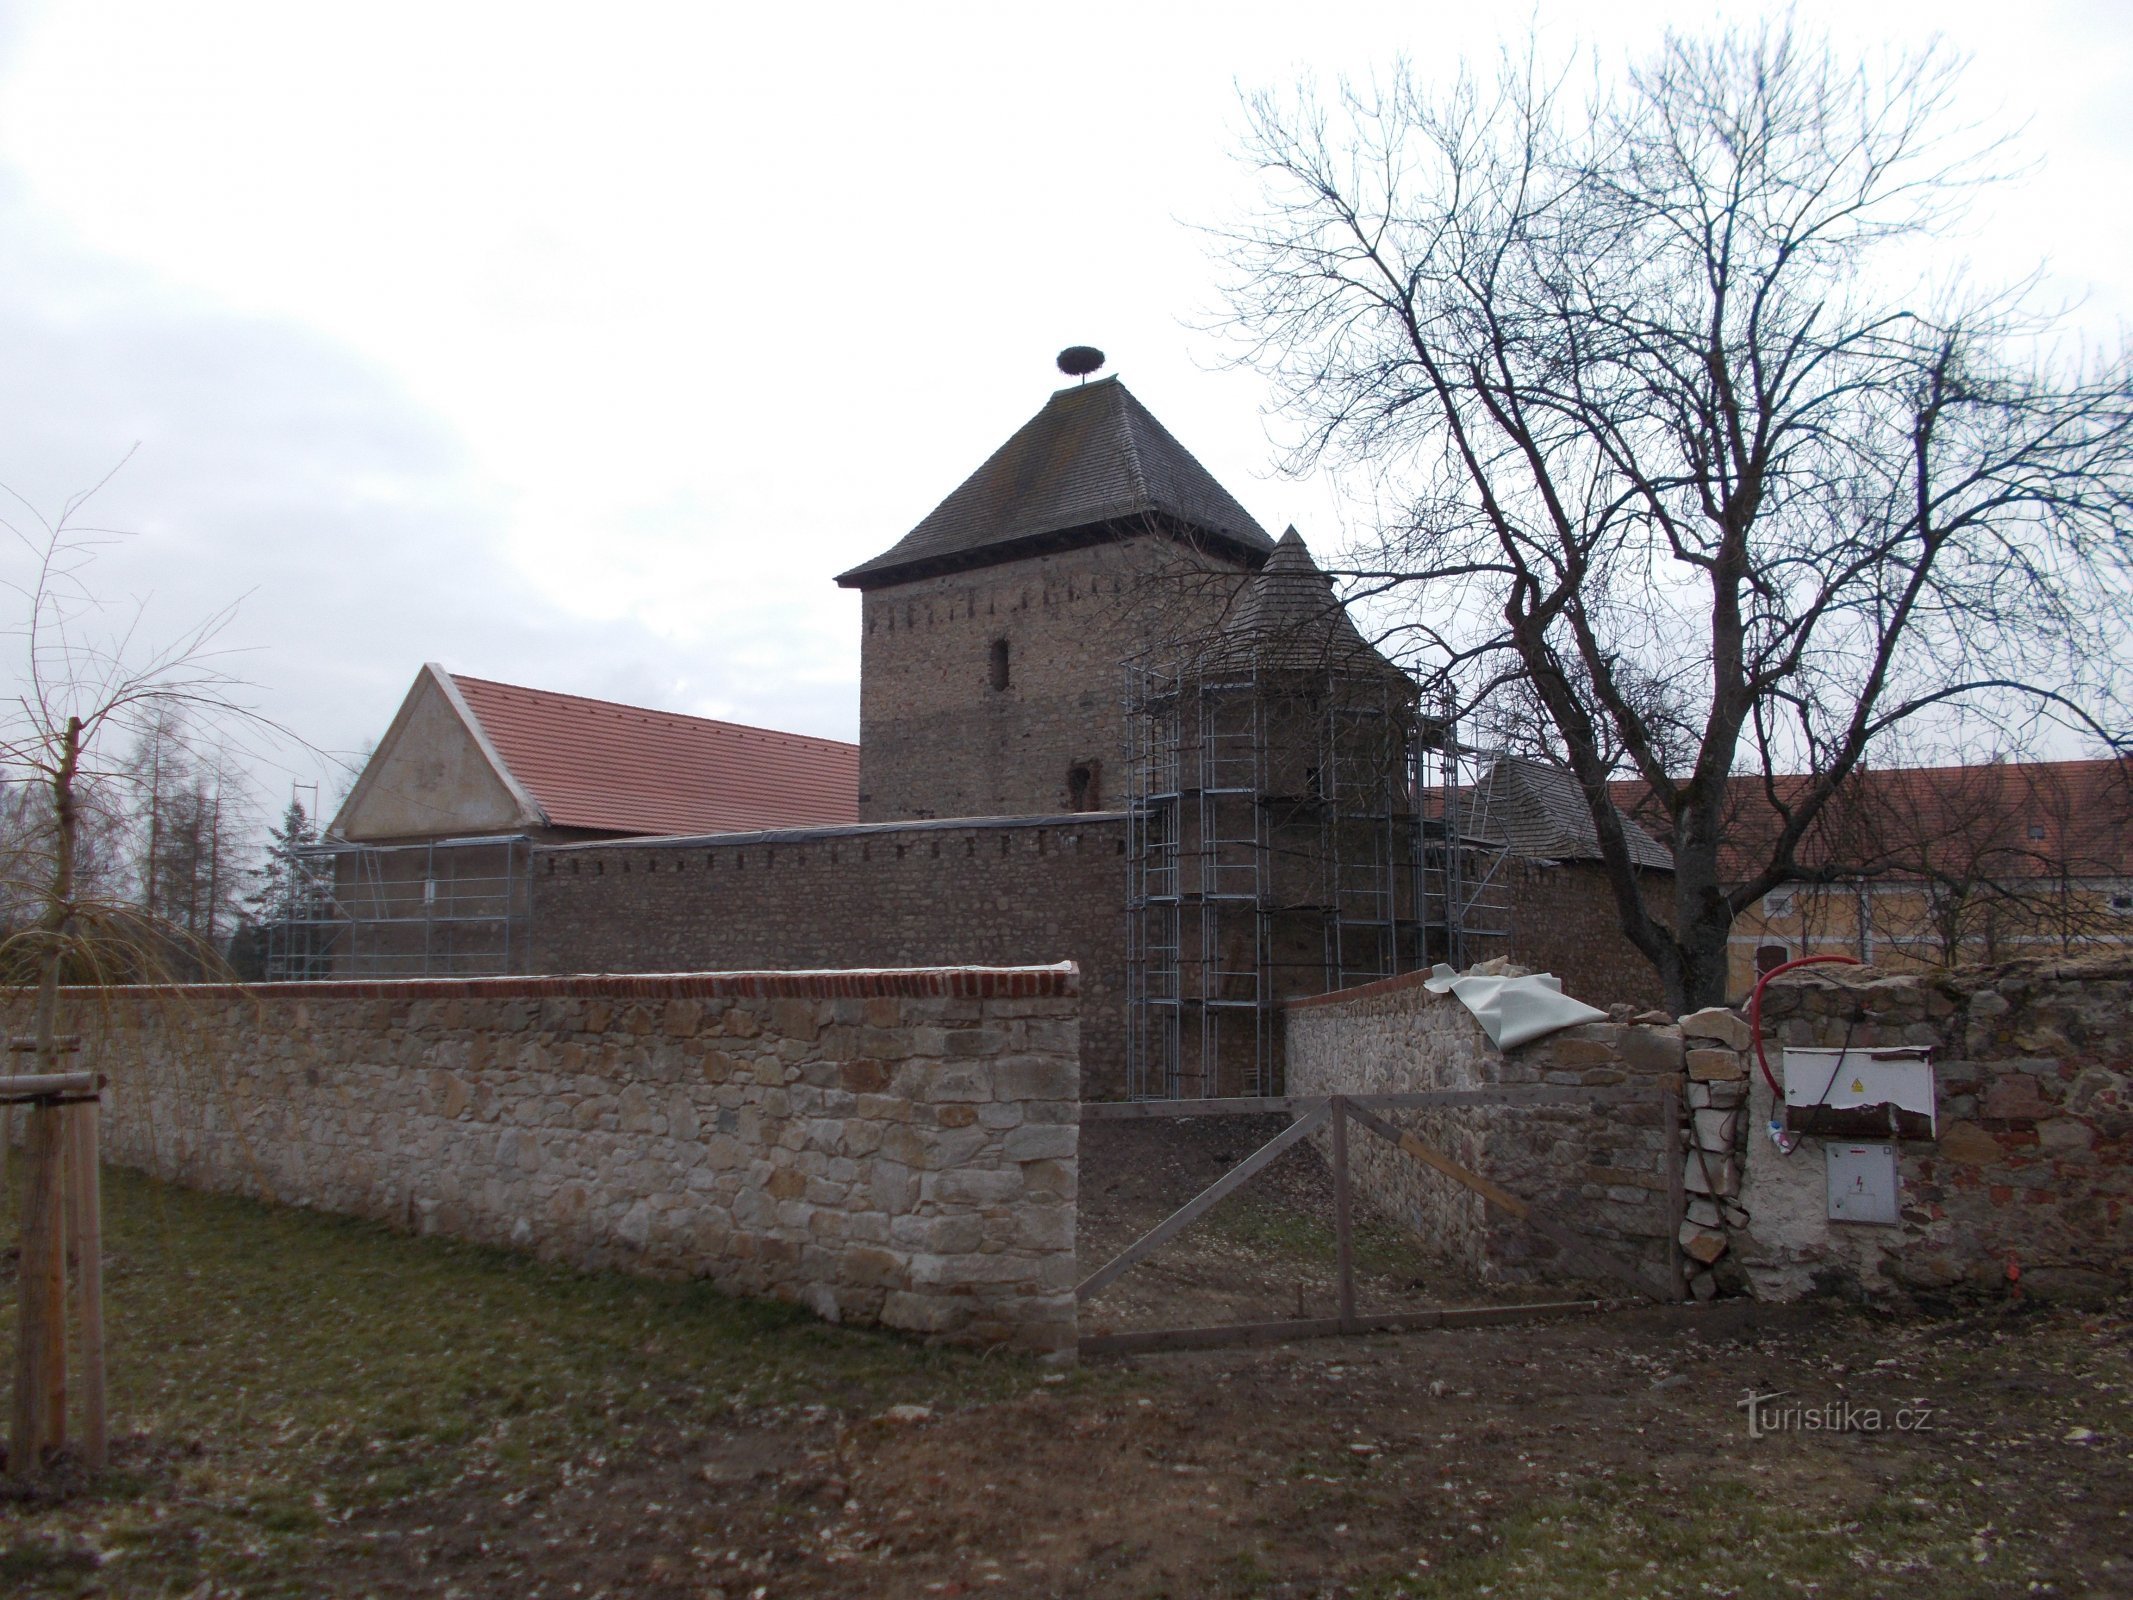 Kestřany - Pháo đài phía dưới